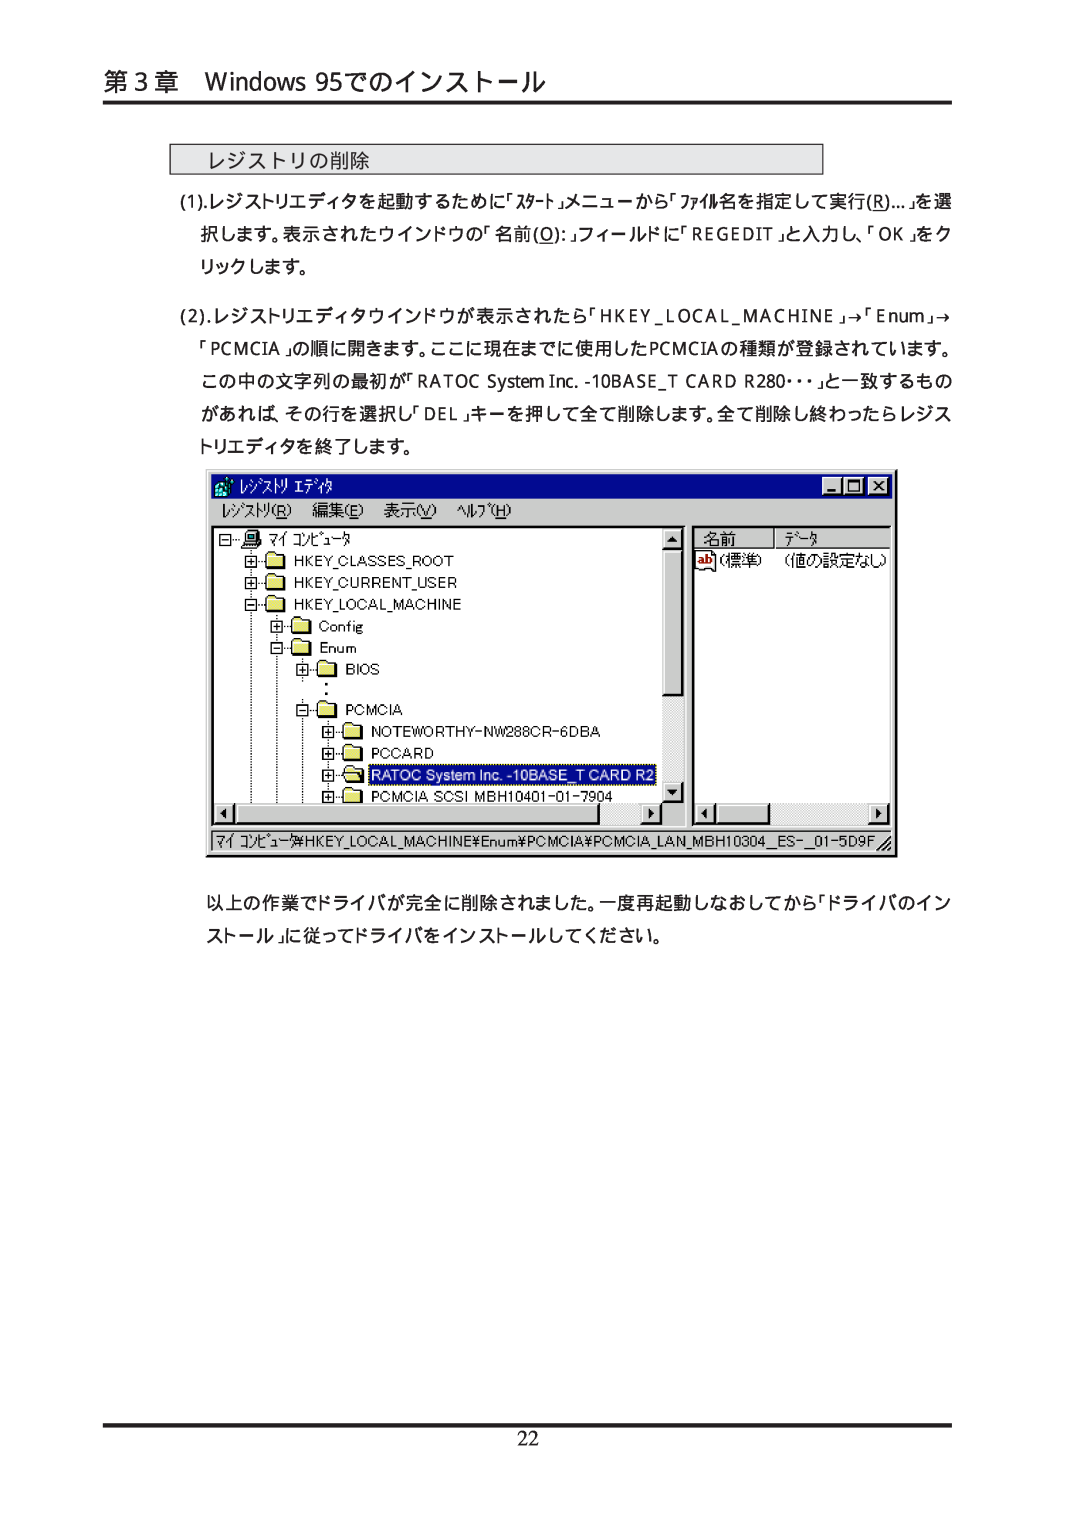 Ratoc Systems REX-R280 manual 第３章 Windows 95でのインストール, レジストリの削除, 2 .レジストリエディタウインドウが表示されたら「HKEYLOCALMACHINE」→「Enum」→ 